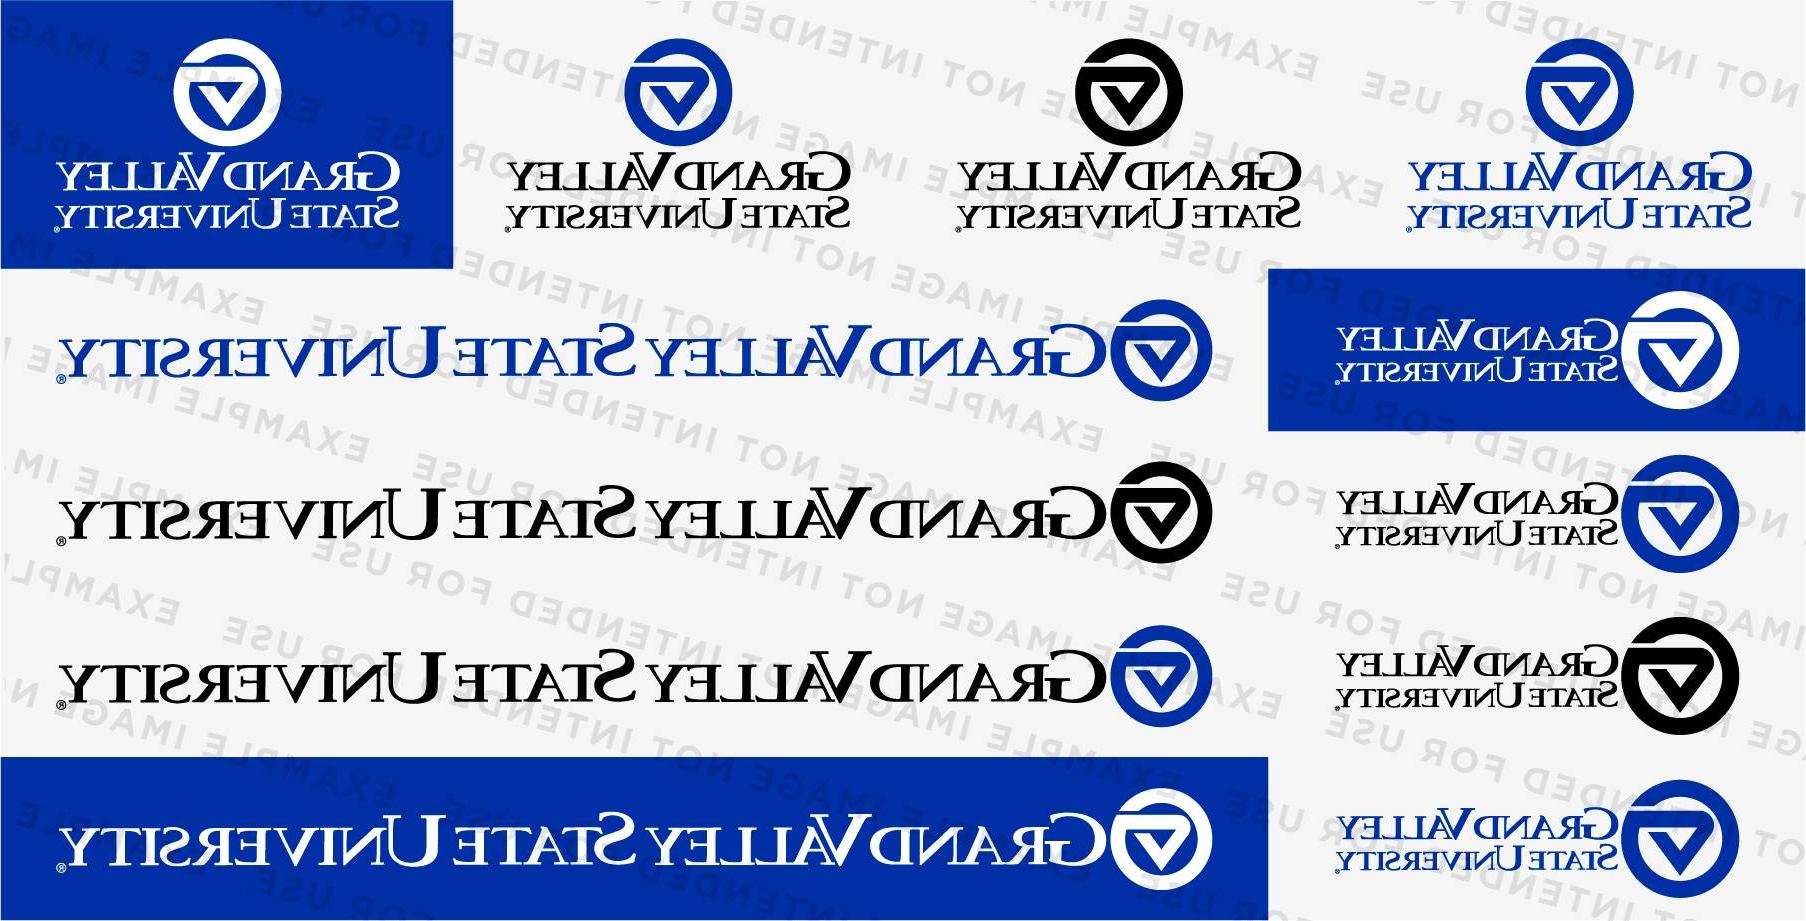 的 various 博天堂官方 logos included in the logo pack.